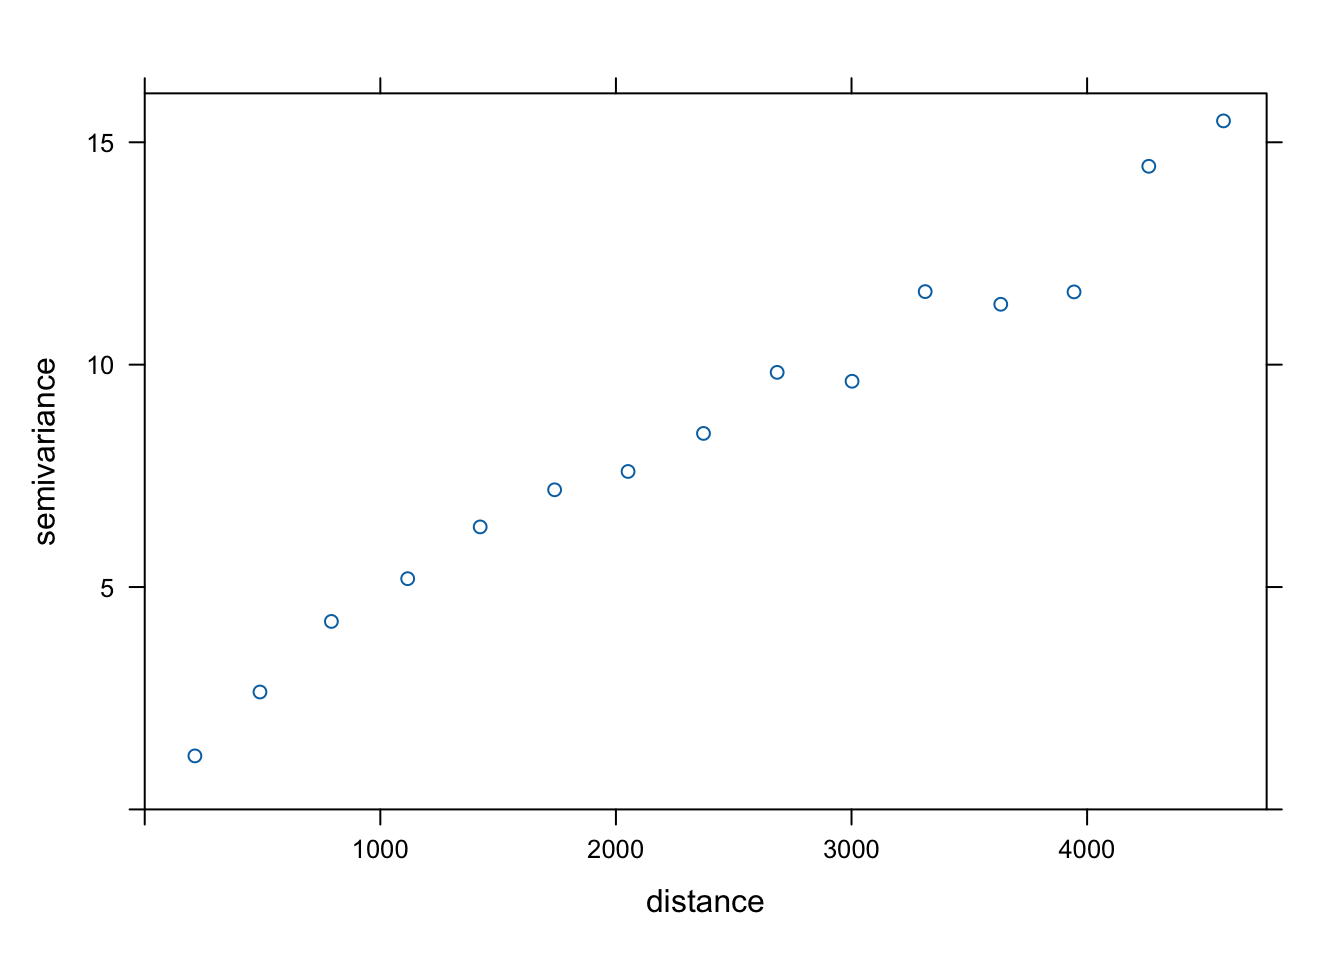 Wykres, nazywany semiwariogramem, reprezentujący niepodobieństwo wartości wraz z odległością.